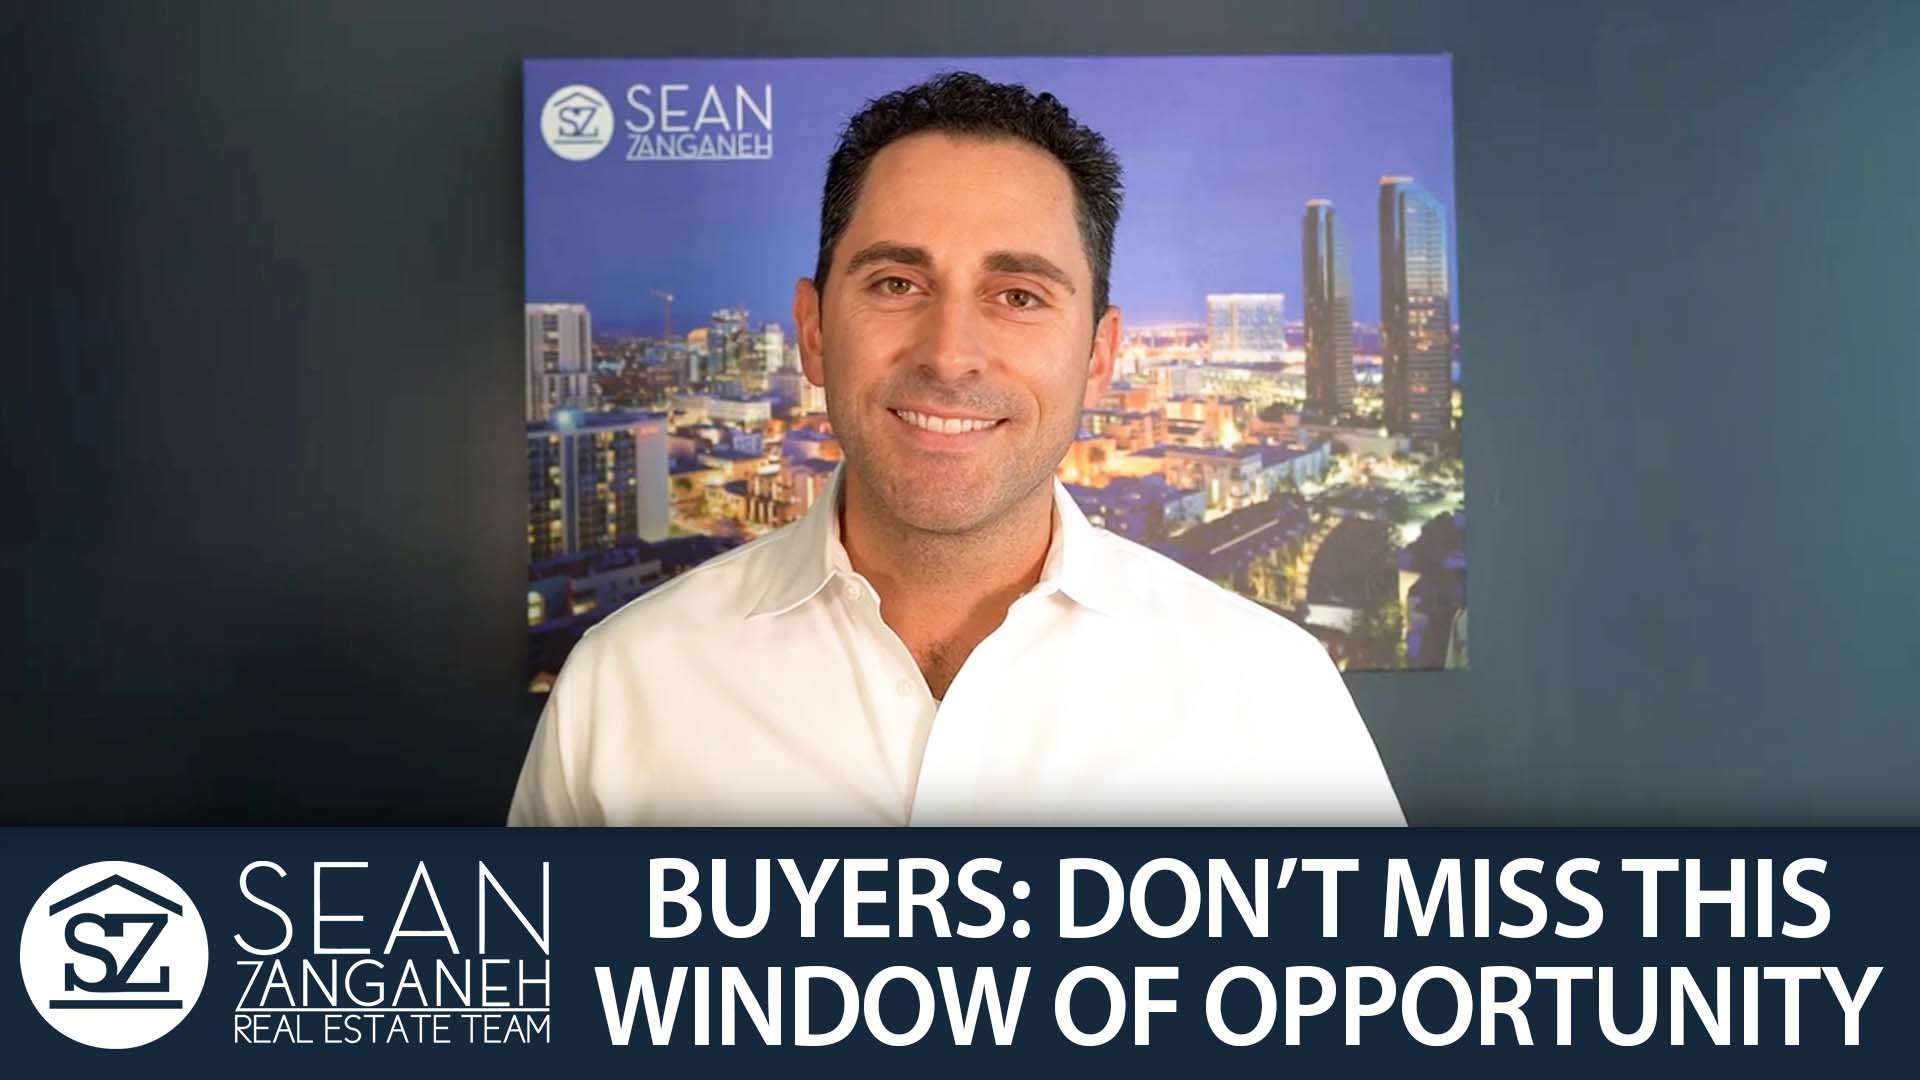 Sean Zanganeh Real Estate Video Blog